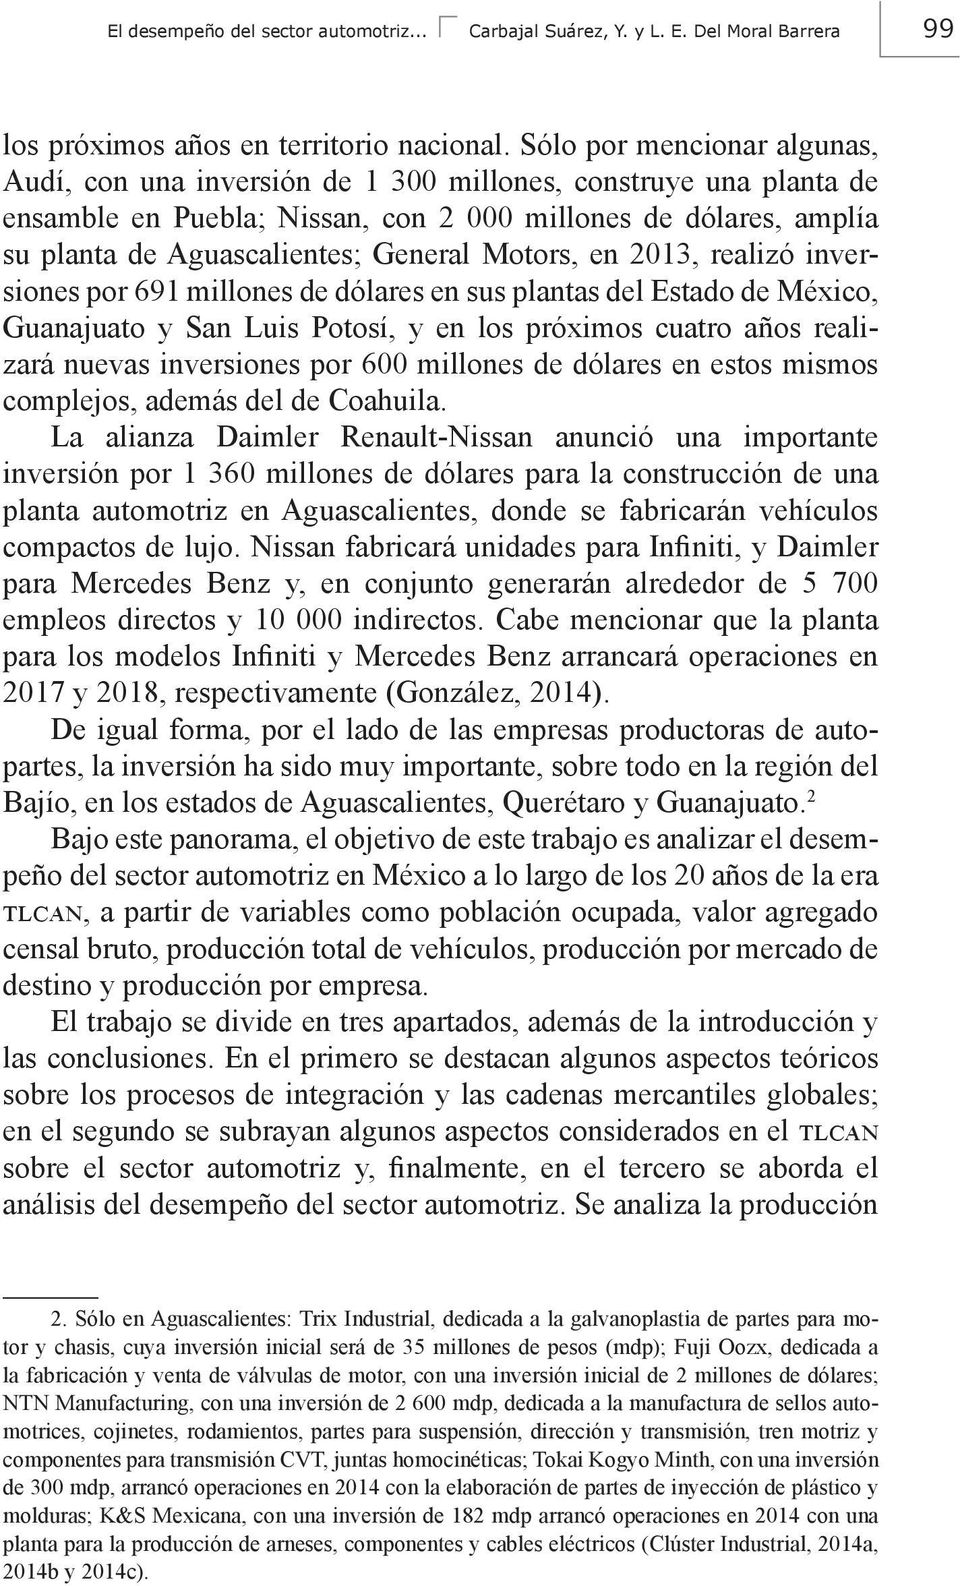 Motors, en 2013, realizó inversiones por 691 millones de dólares en sus plantas del Estado de México, Guanajuato y San Luis Potosí, y en los próximos cuatro años realizará nuevas inversiones por 600